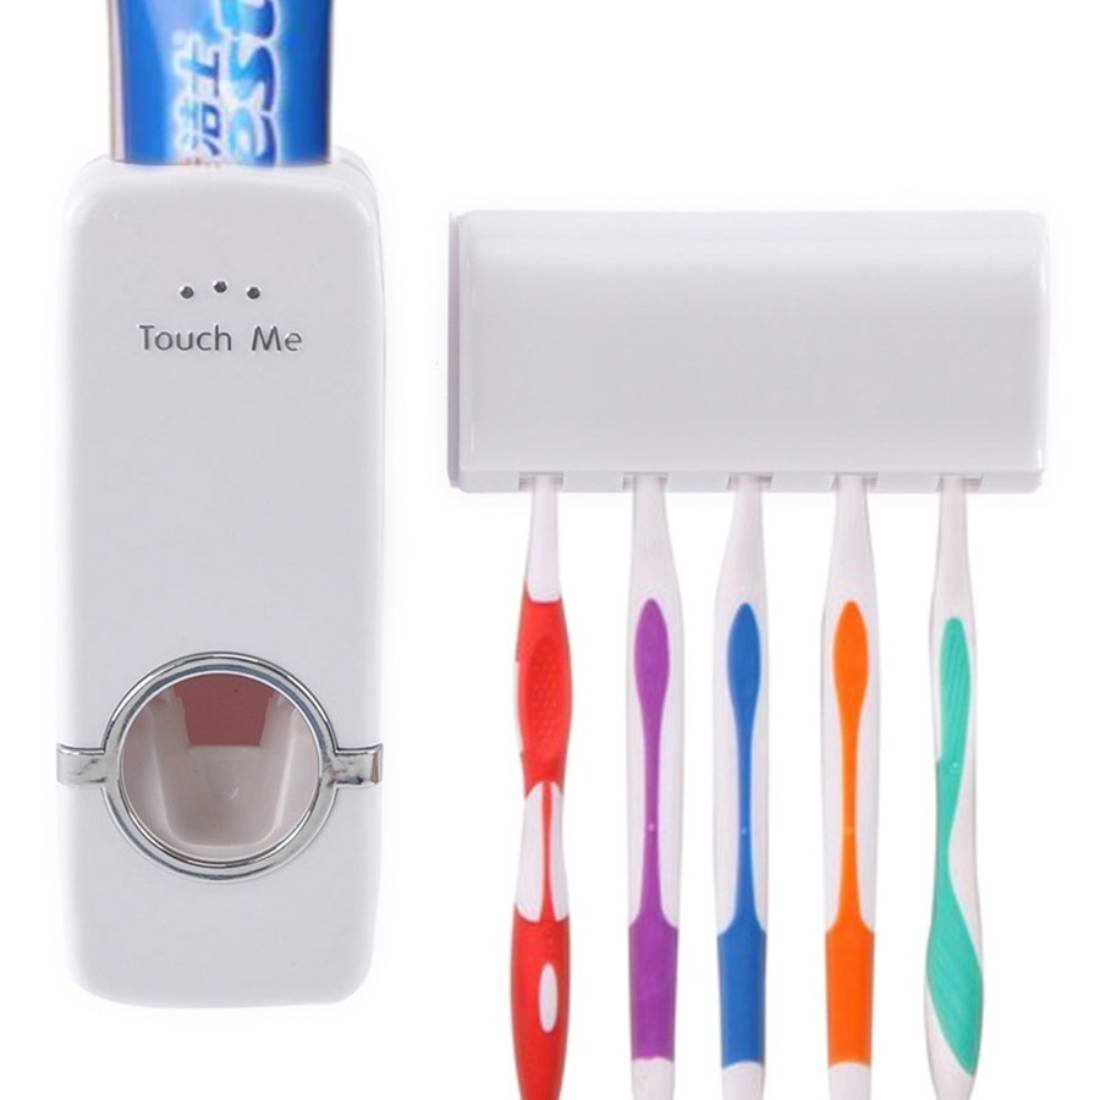 Dispensador automático de pasta dental – Shoppeflex